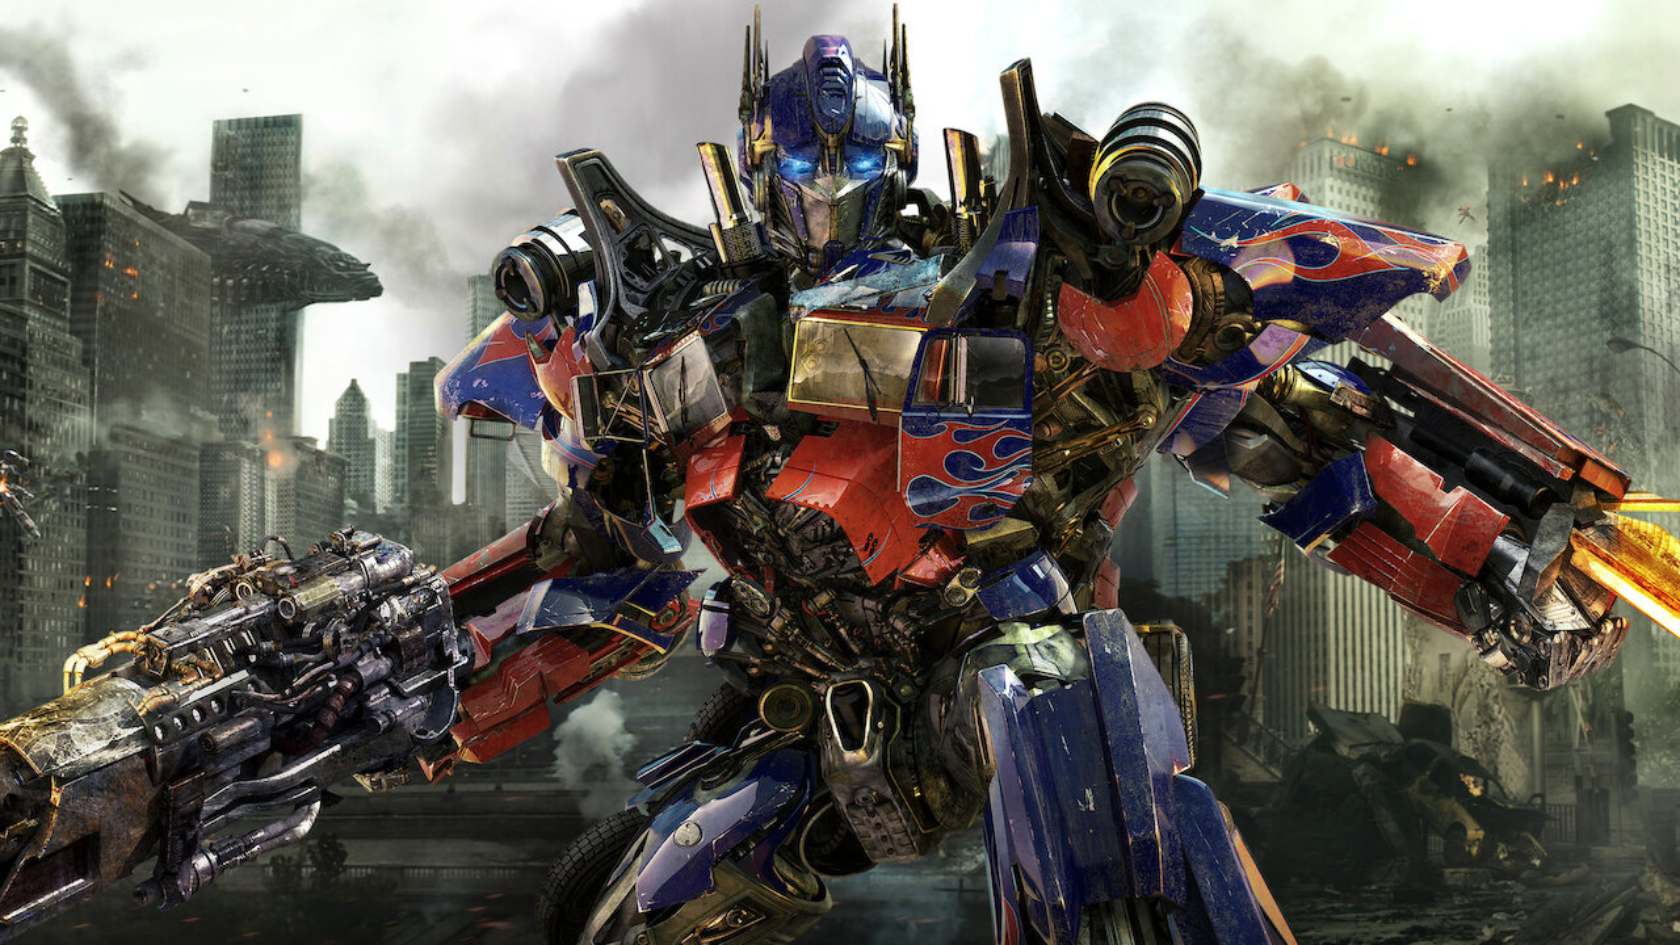 Transformers – O Despertar das Feras'' já tem ingressos